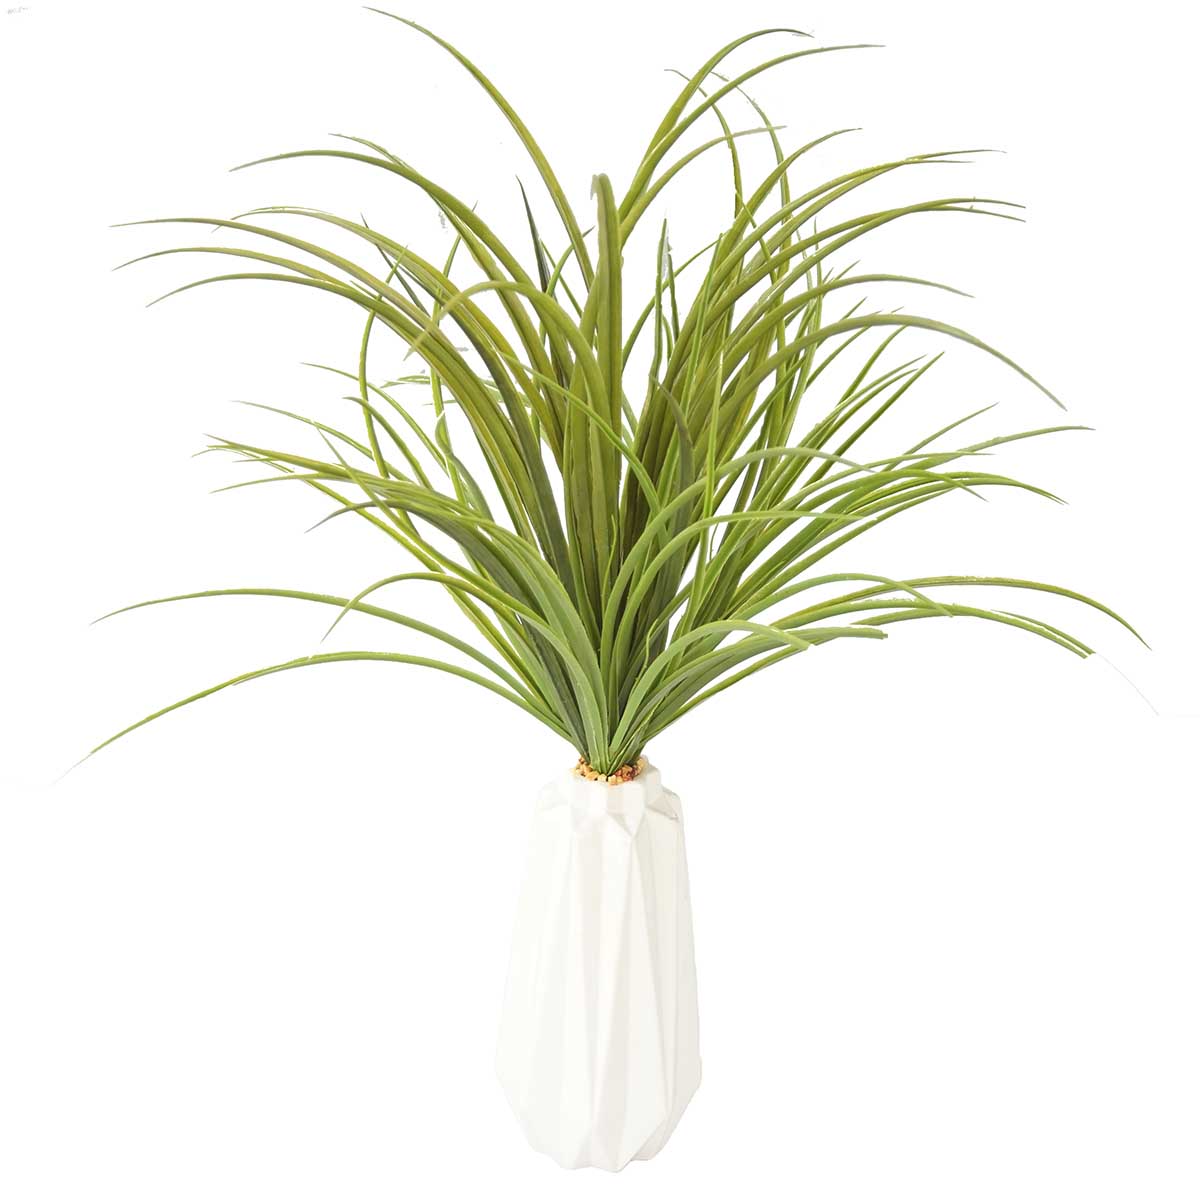 Vha102465 Plastic Grass In Ceramic Vase - White